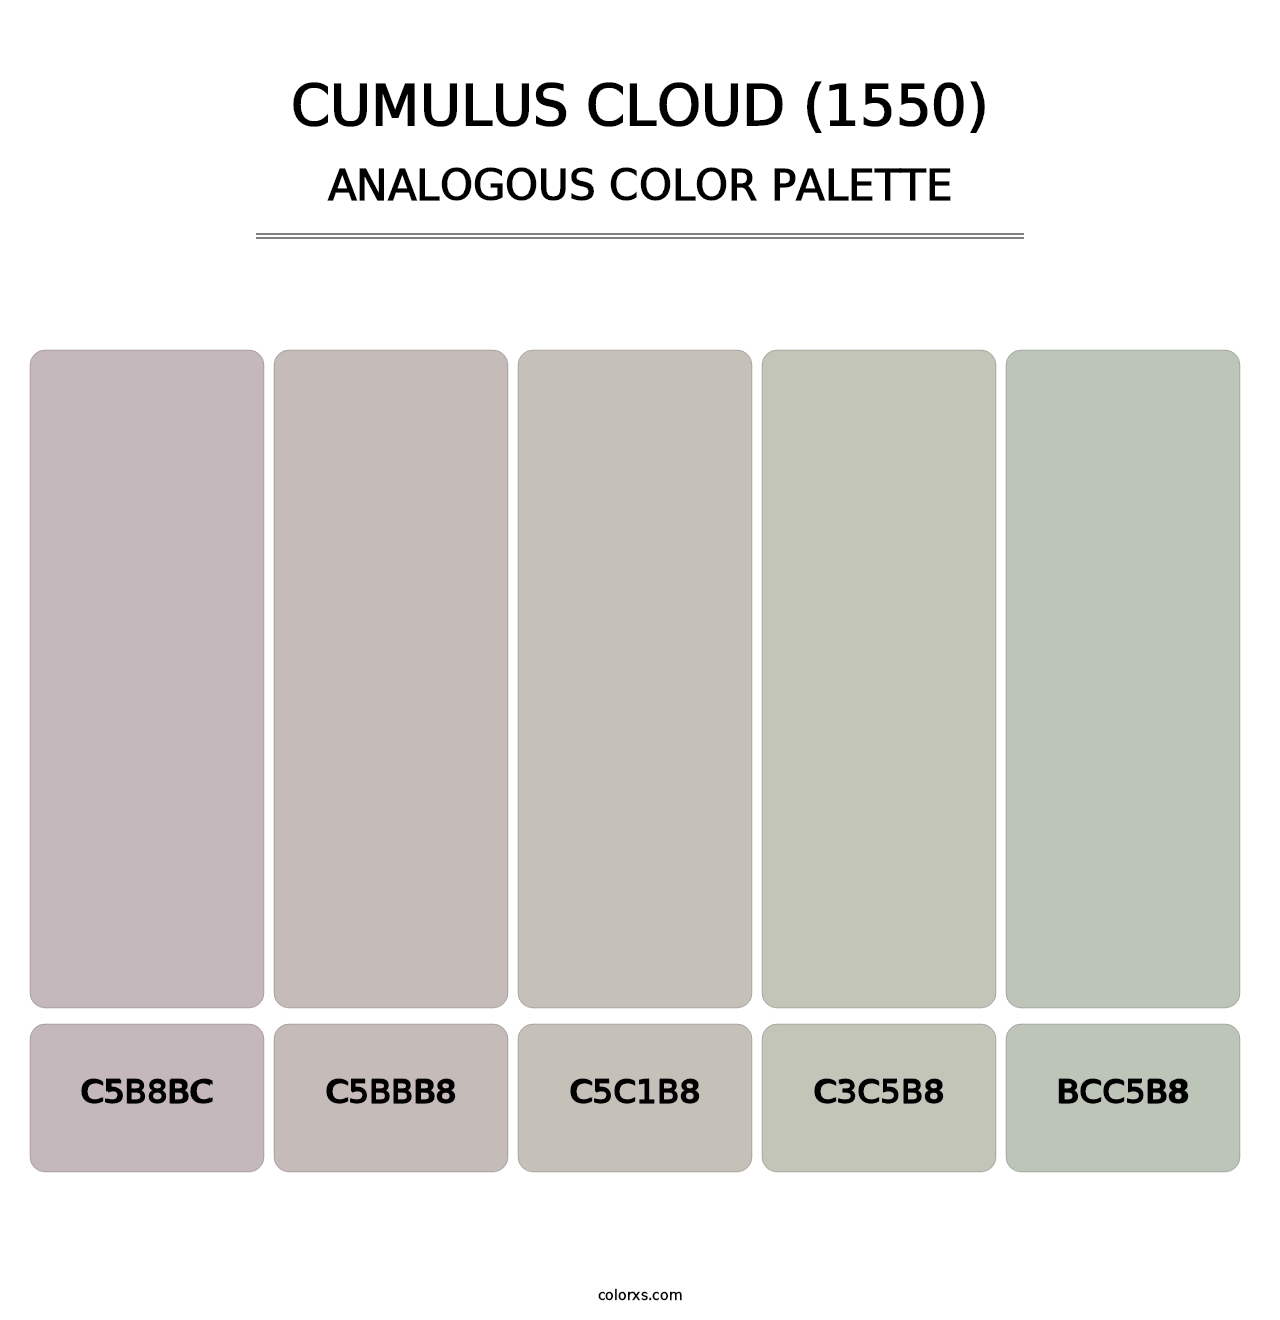 Cumulus Cloud (1550) - Analogous Color Palette